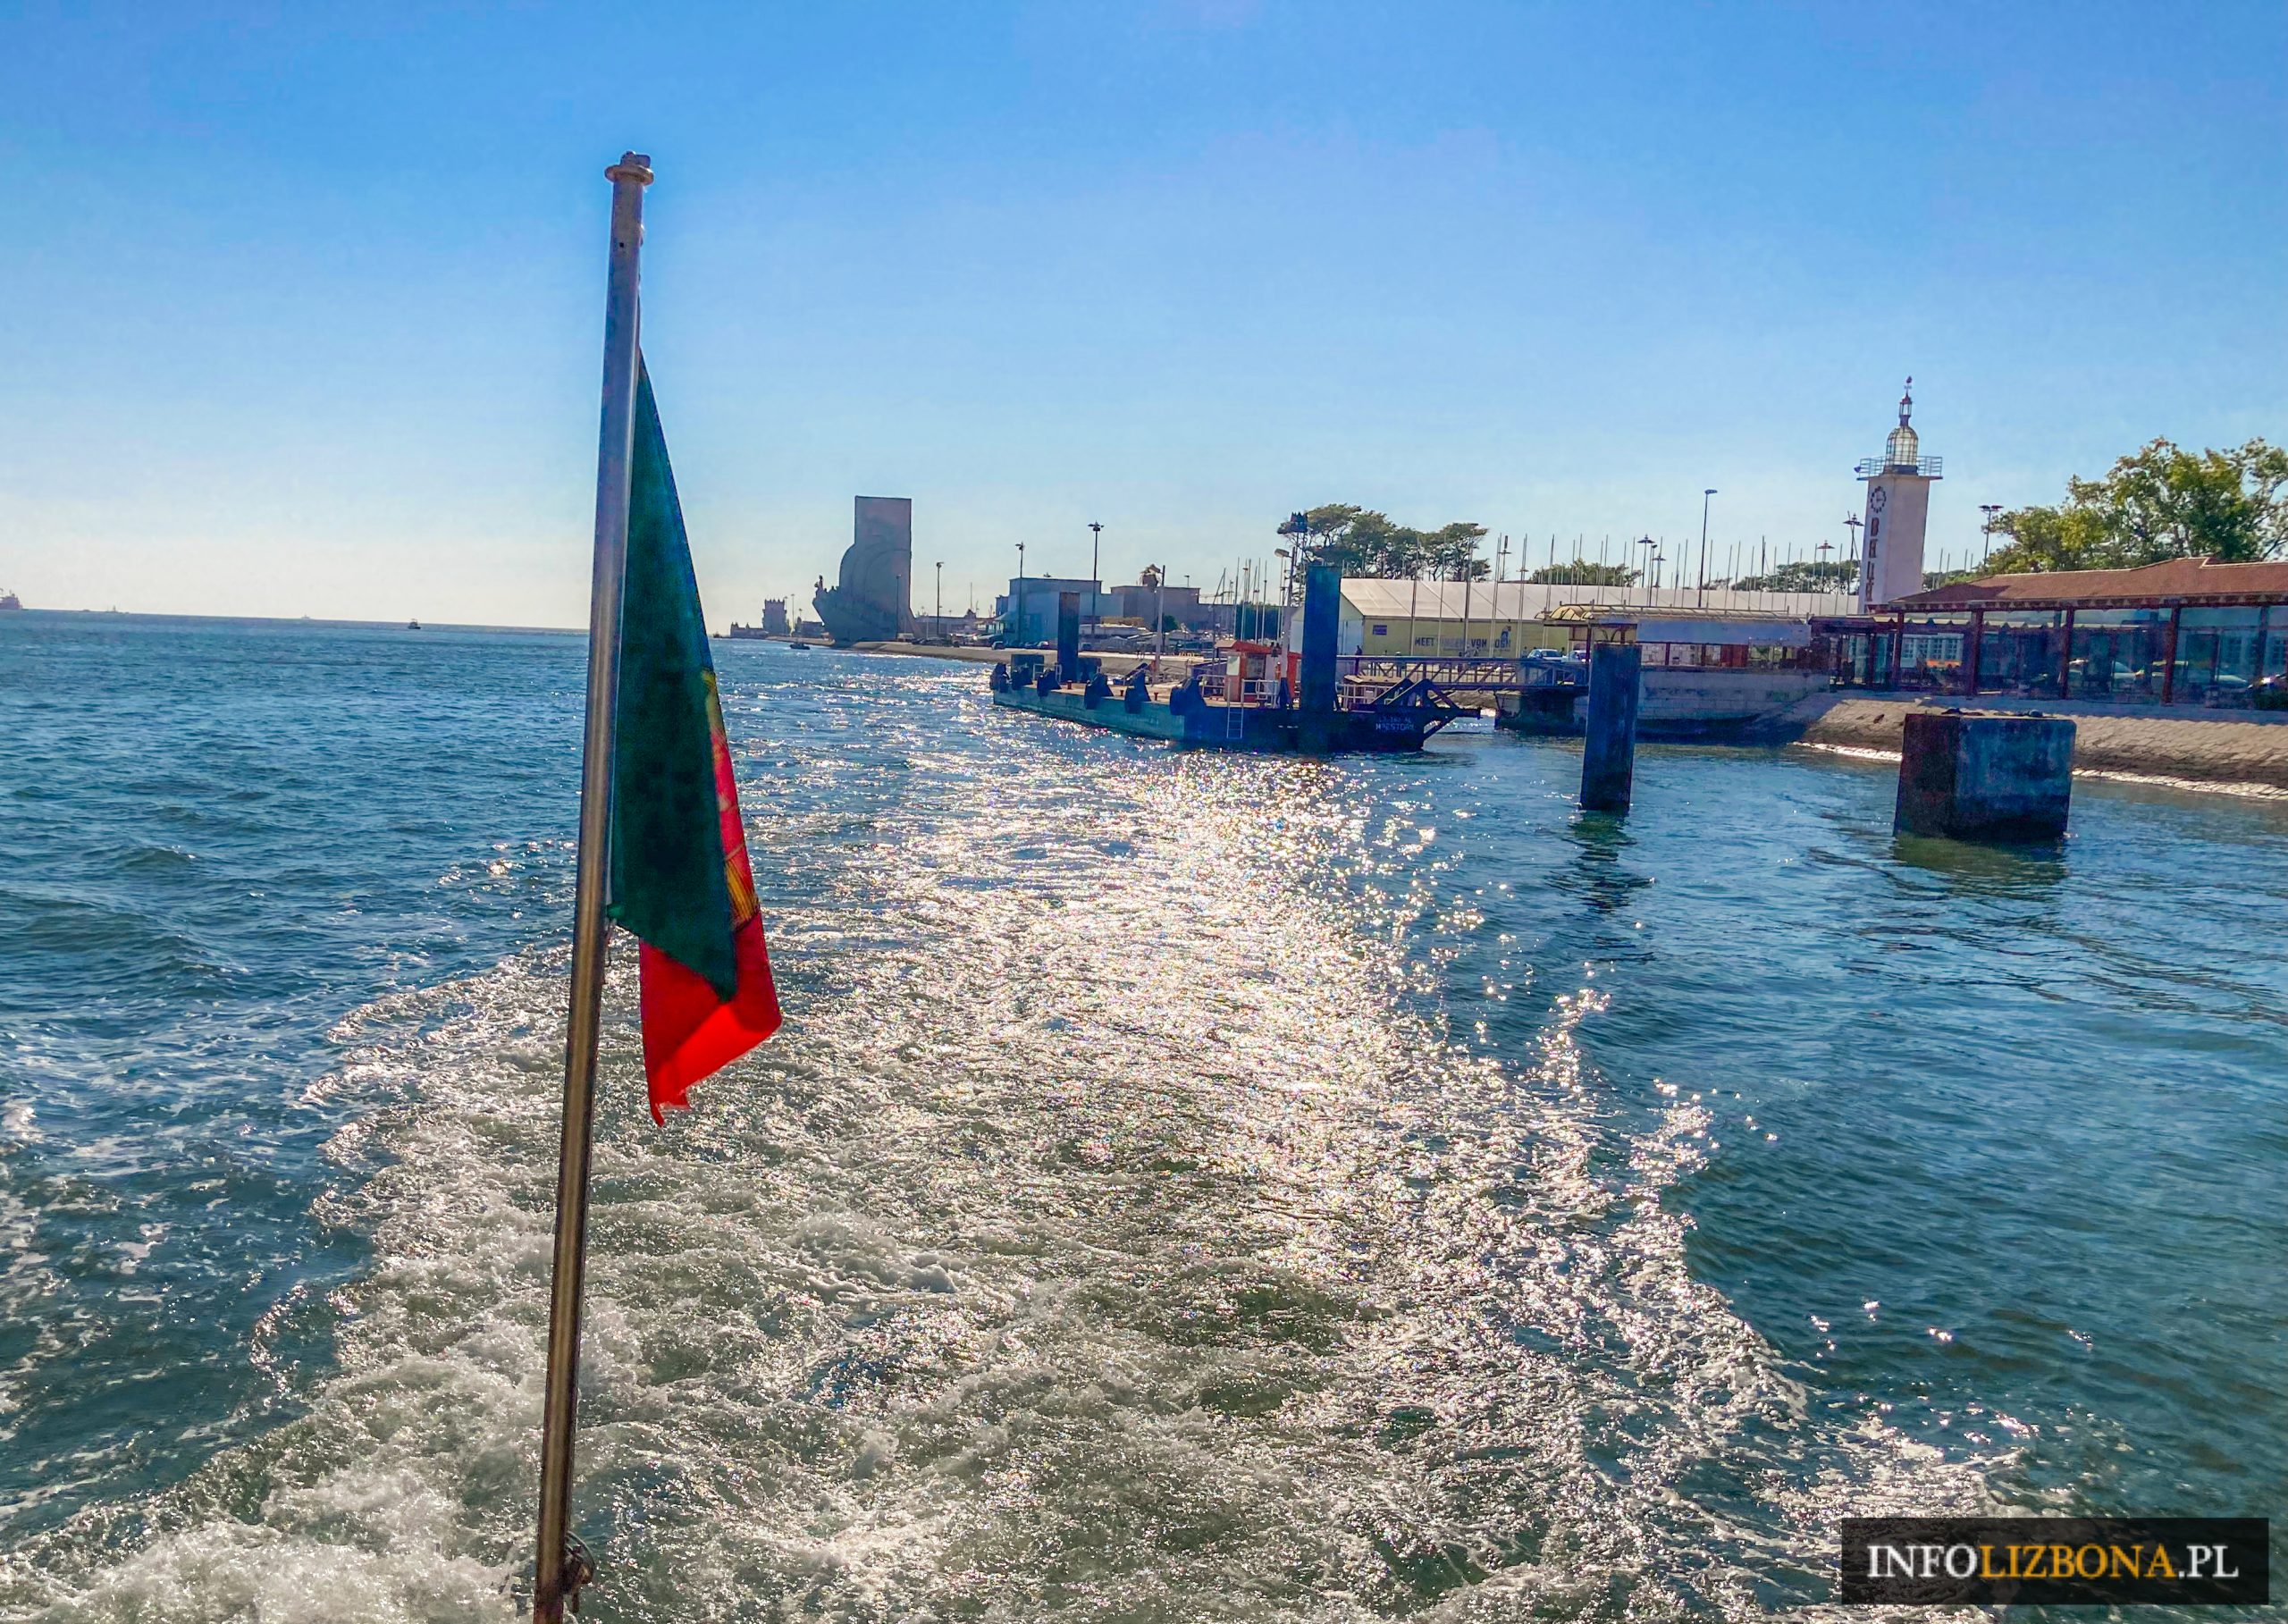 lizbona rejsy po tagu rejs po rzece Tejo Lisboa Lisbona Portugalia ceny opinie bilety online opis przystanie skąd oferty porównanie bilety jachty w Lizbonie łodzie porta